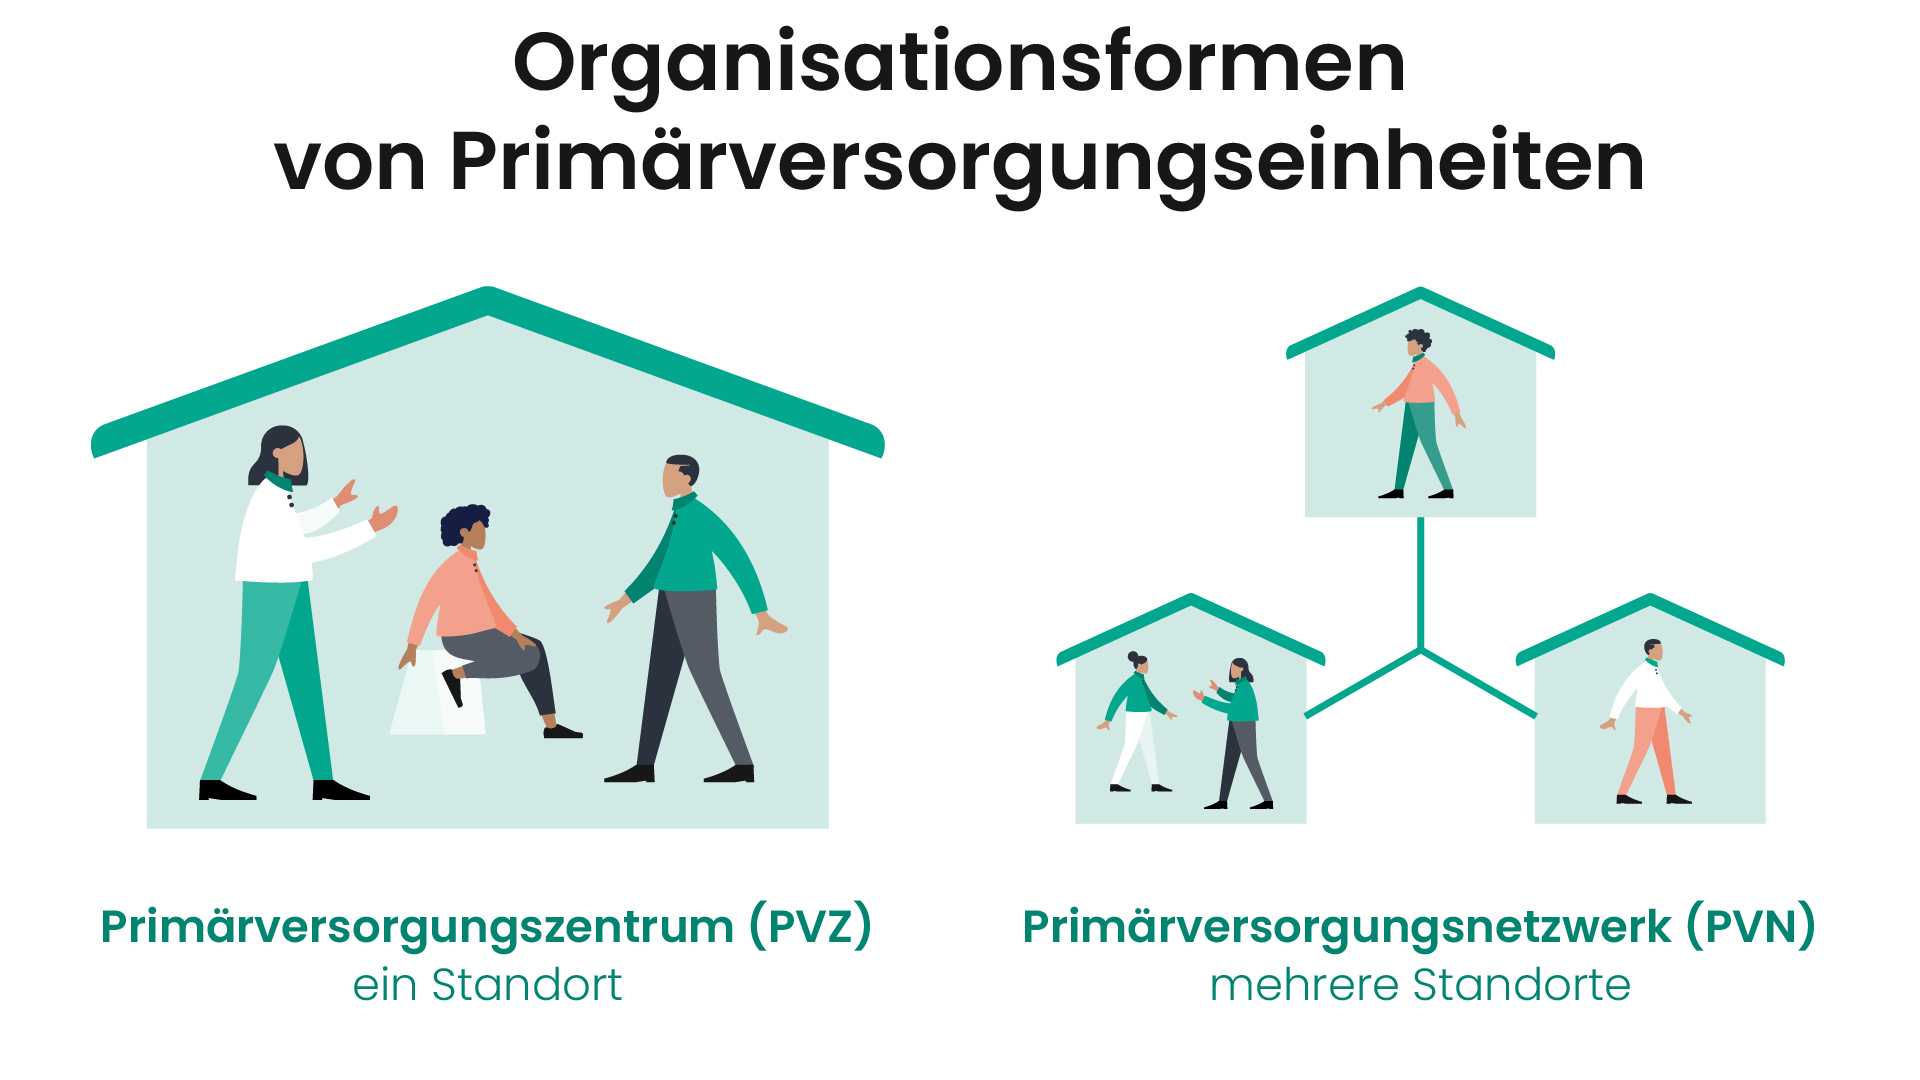 Das Bild zeigt die Organisationsformen einer PVE.